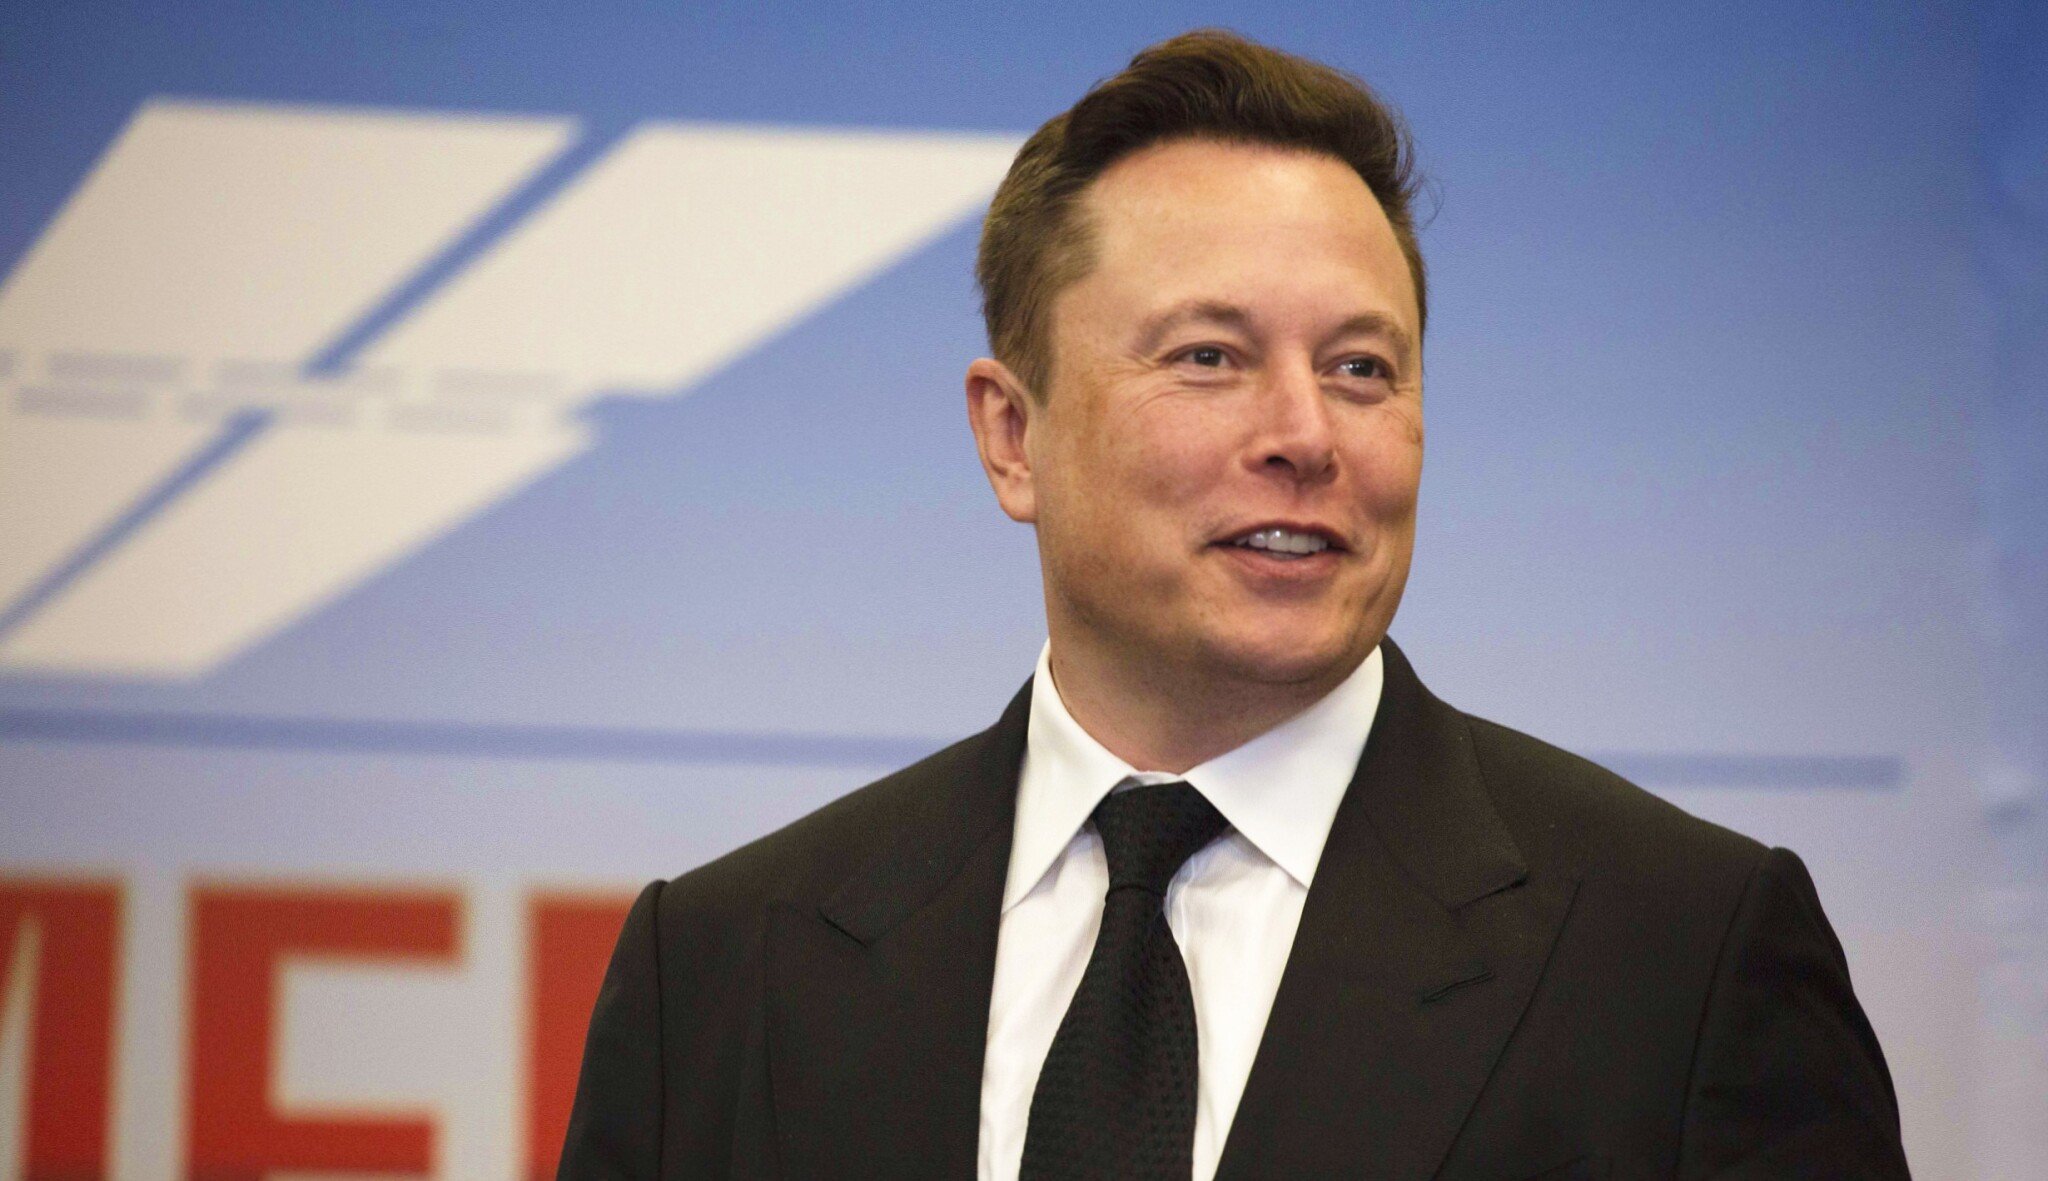 Cesta k miliardám. Jak se stal Elon Musk jedním z nejbohatších lidí planety